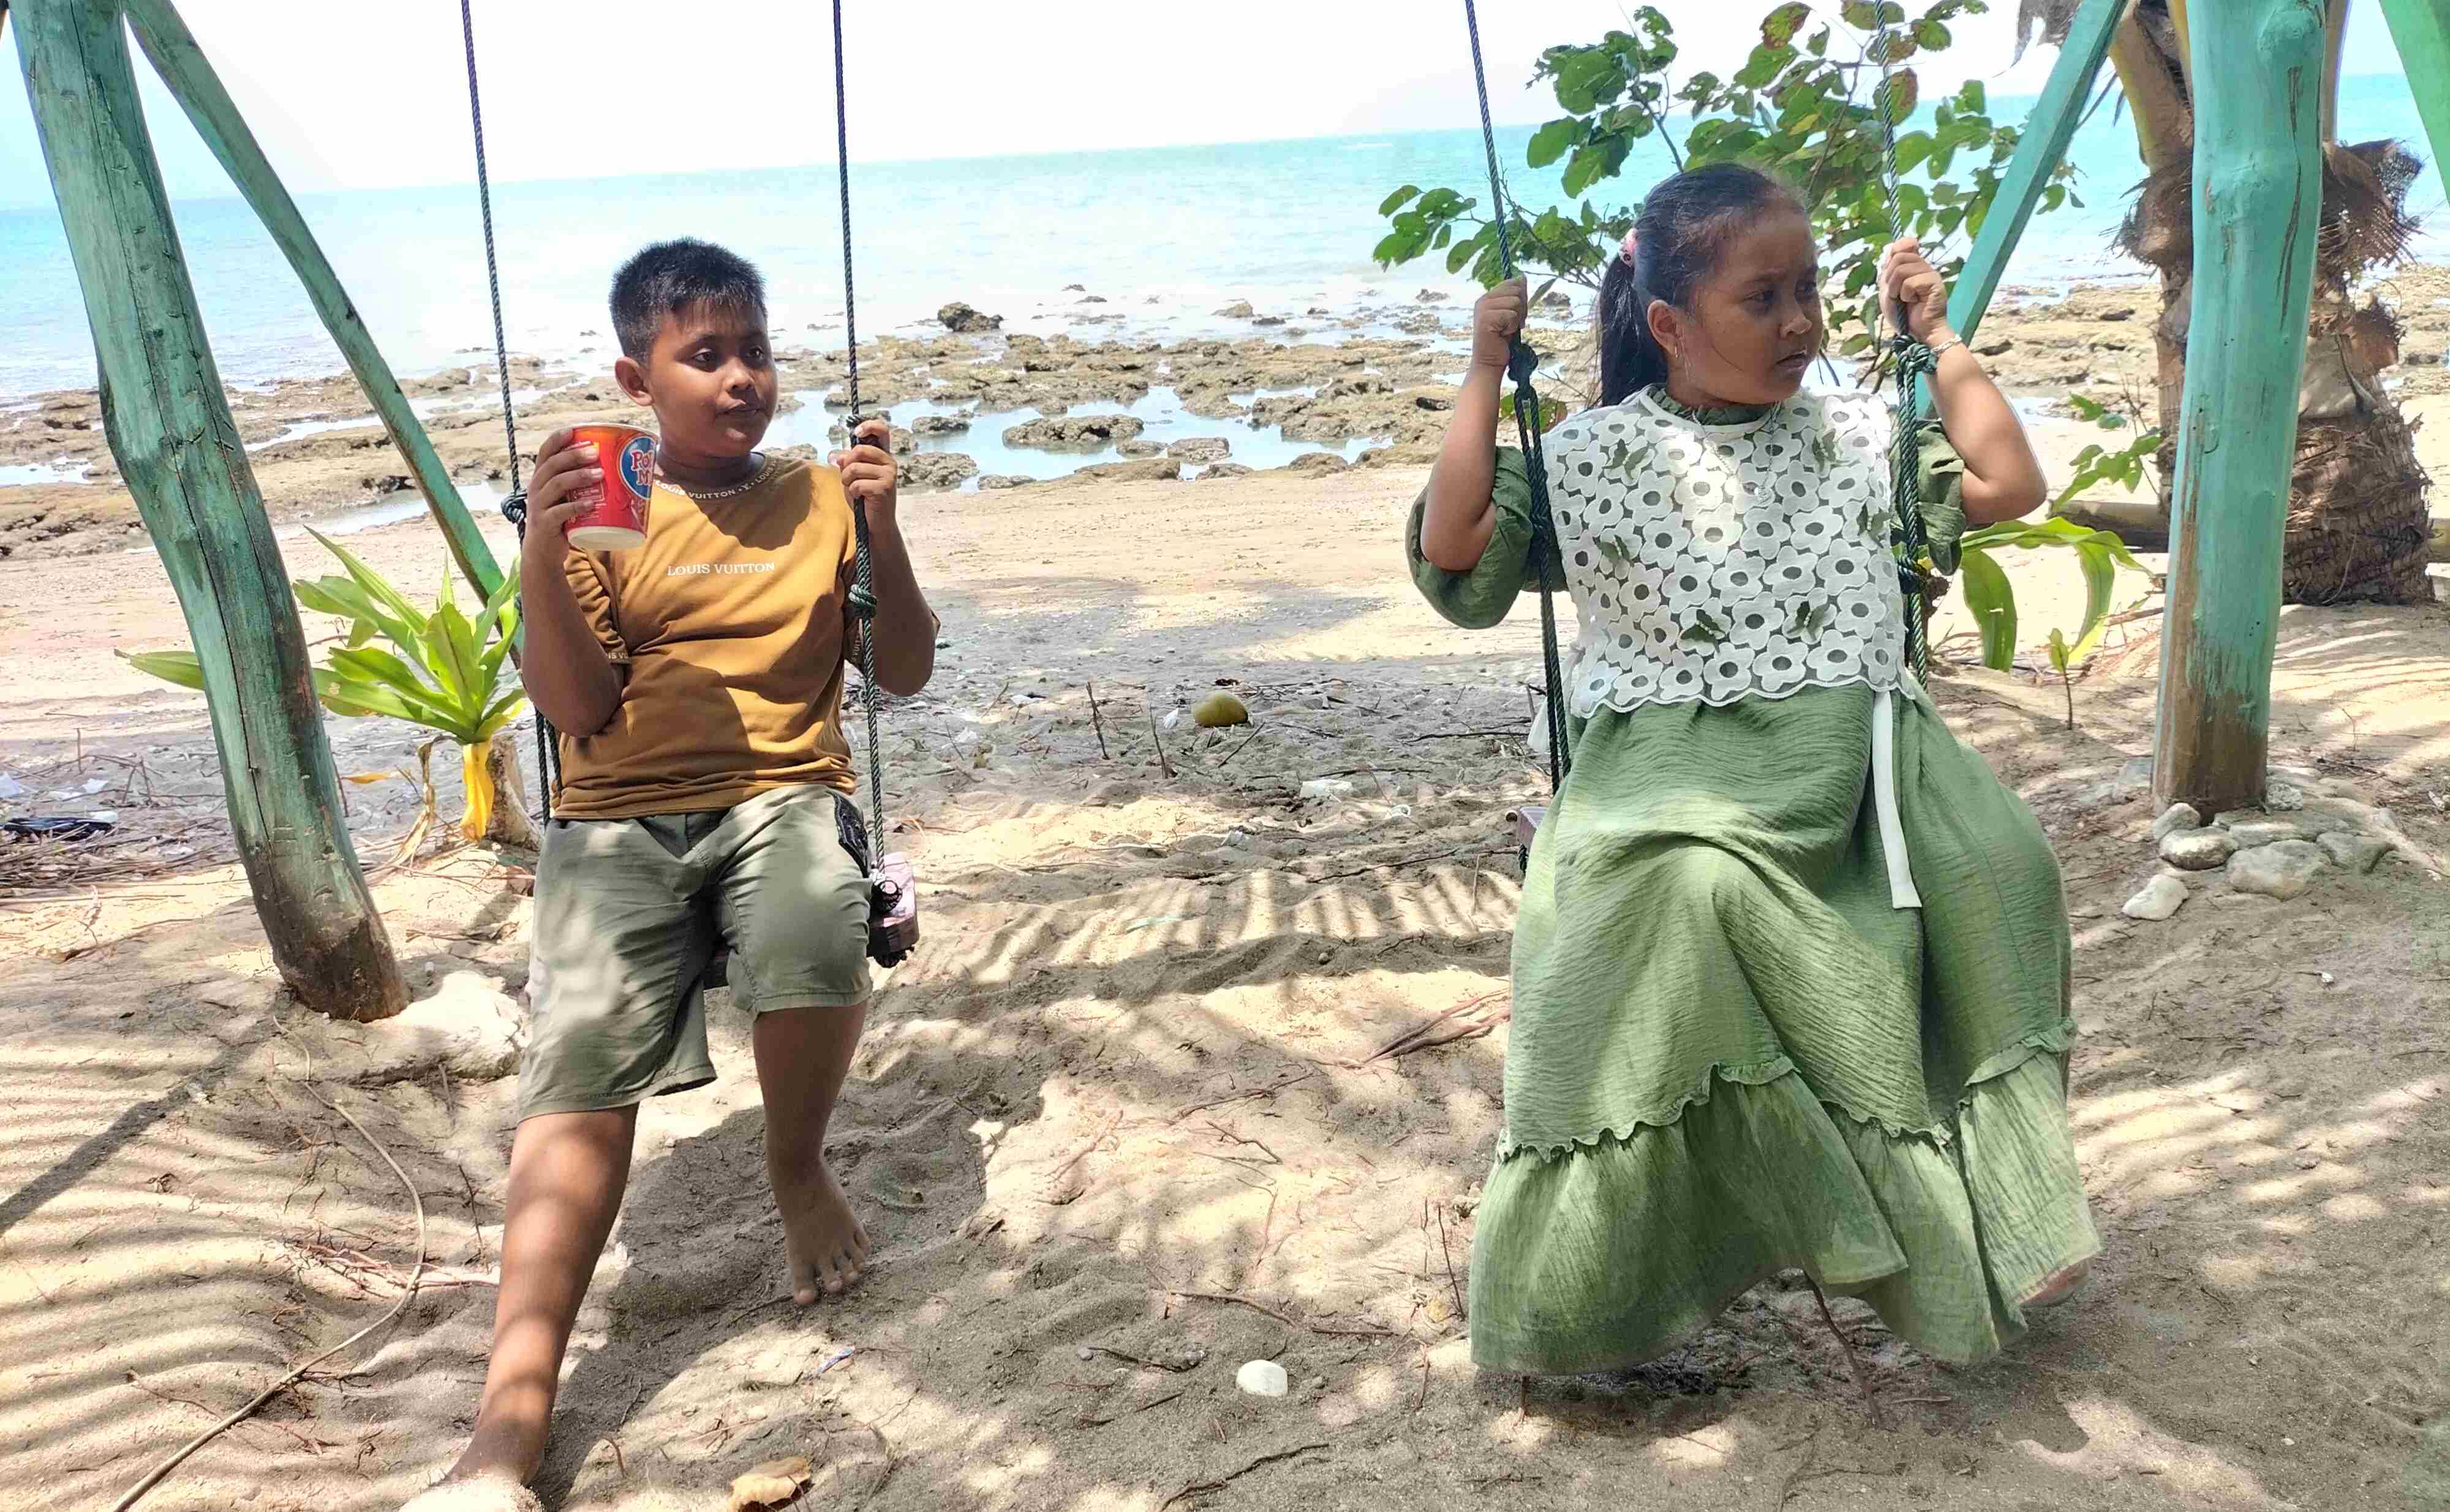 Pesona Wisata Pesesekh Khikit Tanggamus. Keindahan Pantai Di Ujung Aspal